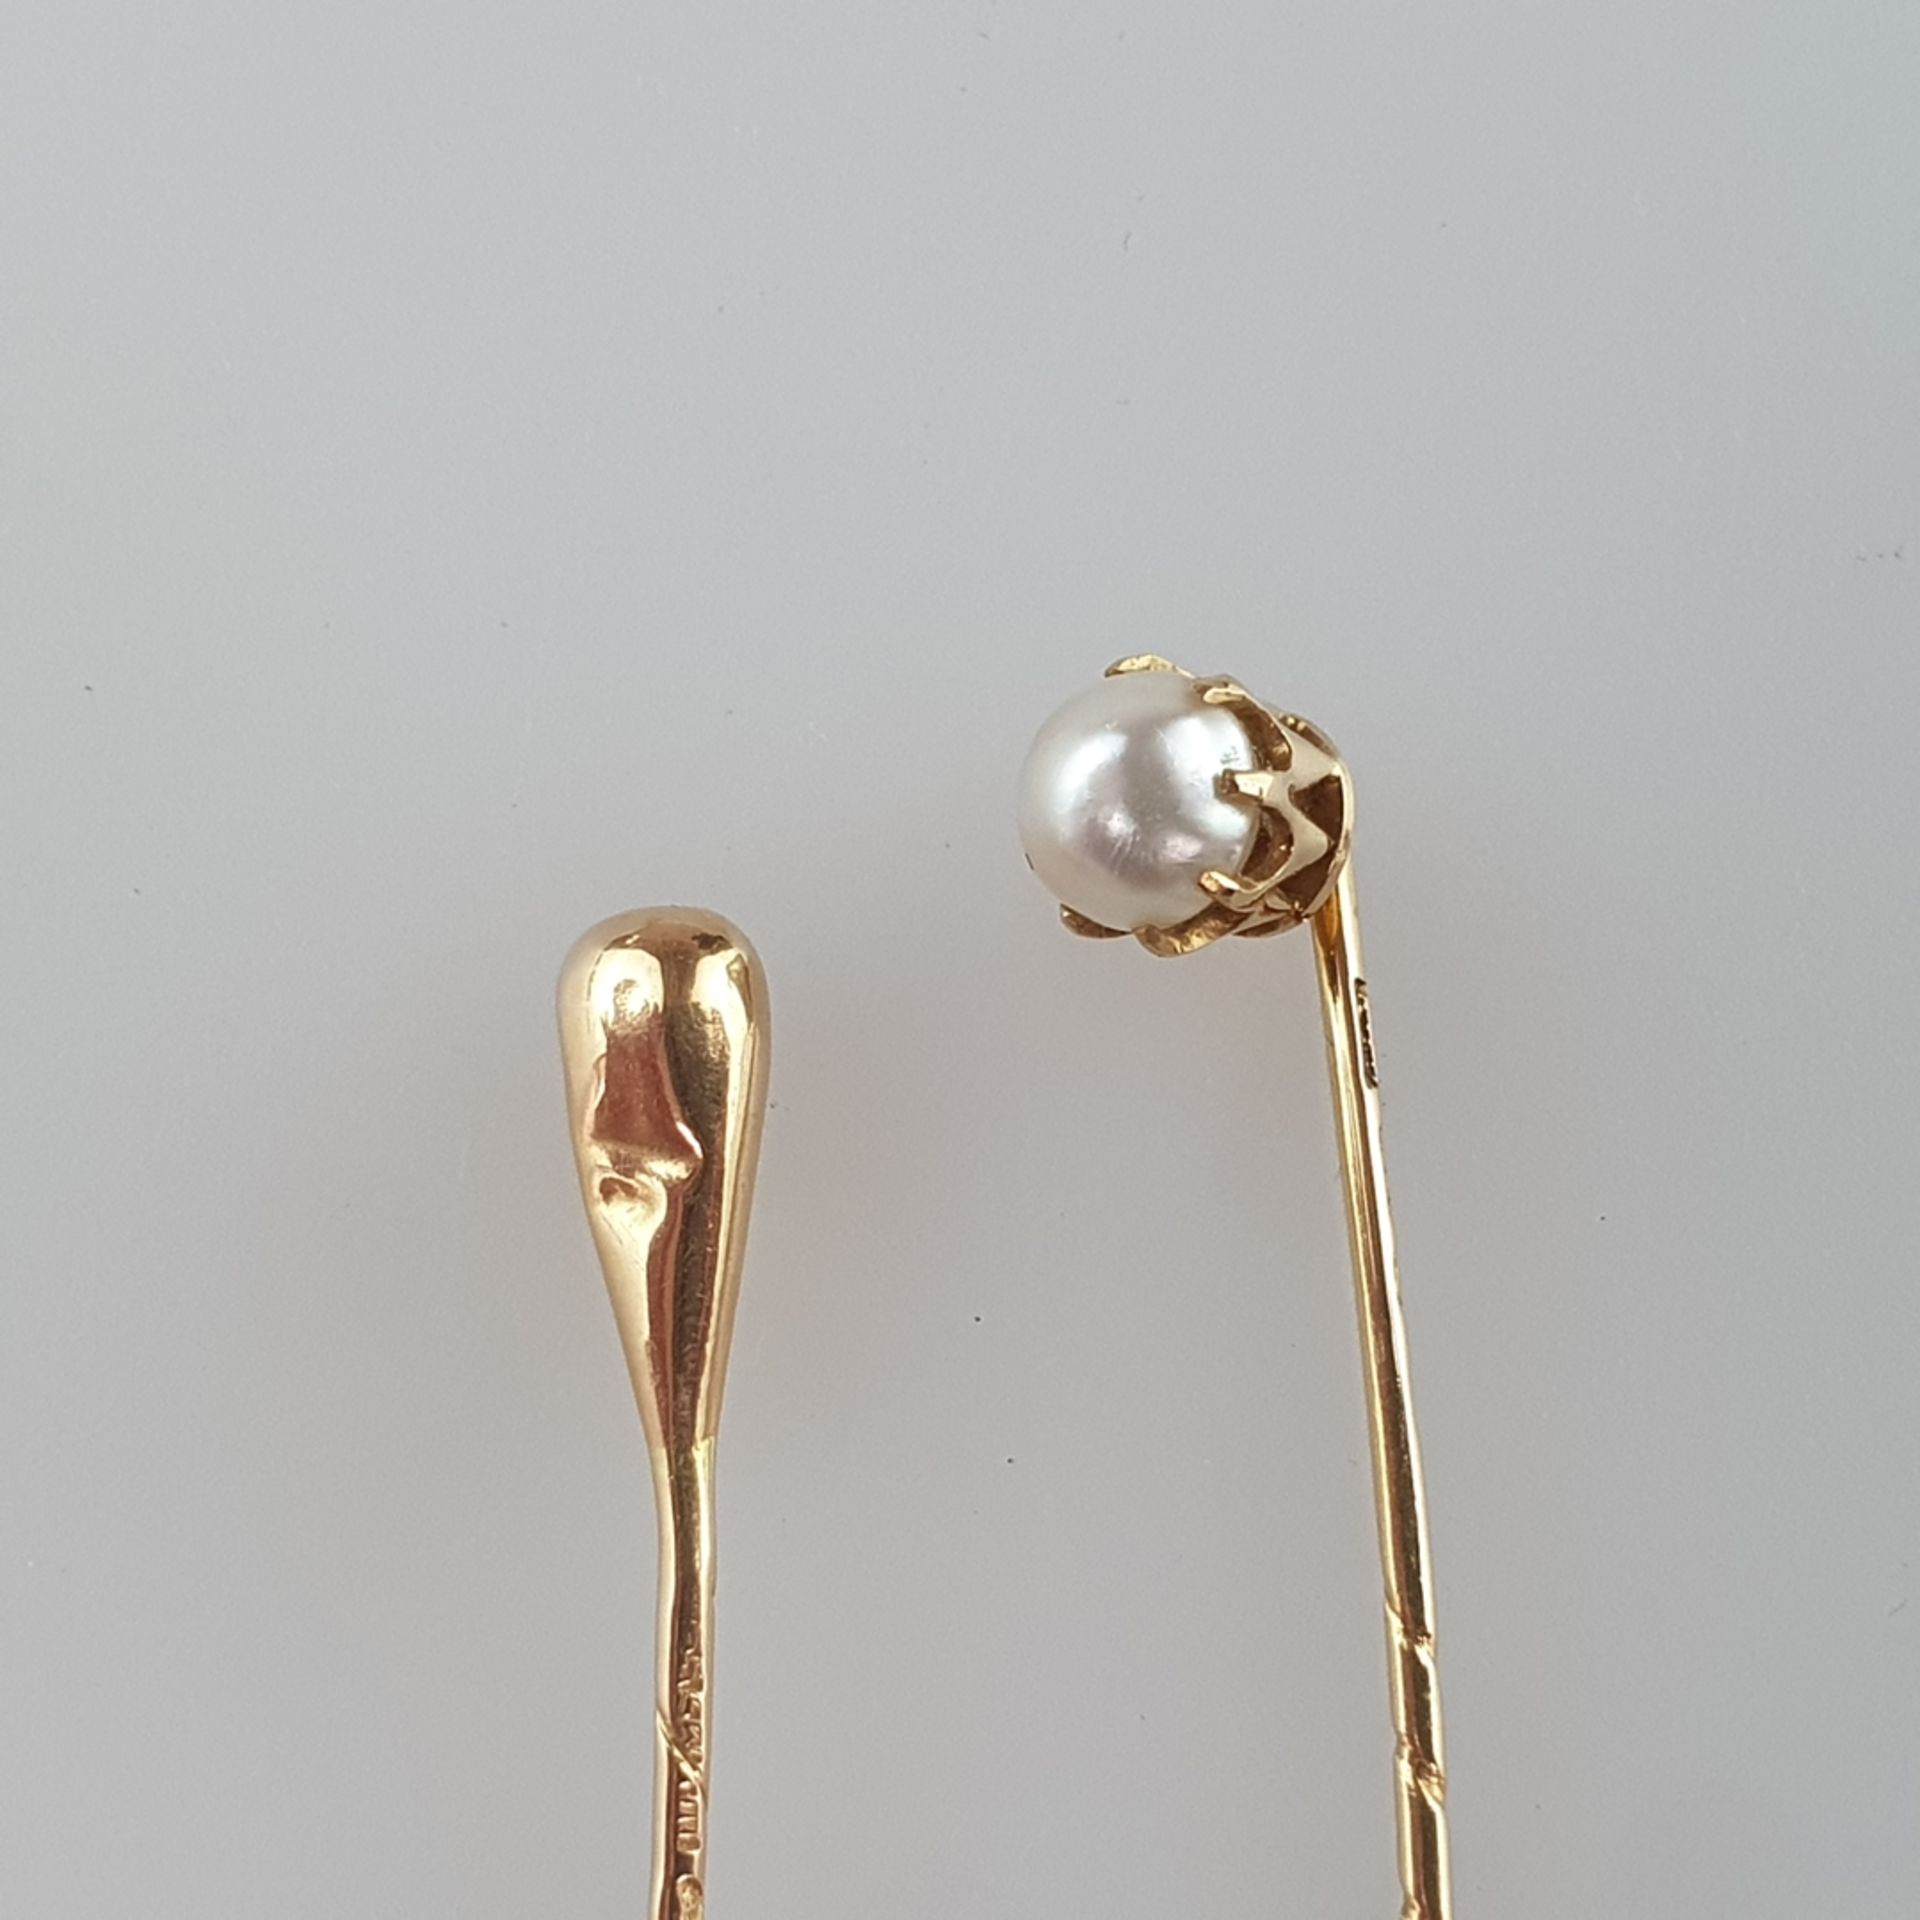 Zwei Krawattennadeln - 18Kt-Gelbgold, 1x Perlenbesatz, L.ca.5,8 bzw. 6,5cm, Gesamtgewicht ca. 2,6 g - Bild 2 aus 4